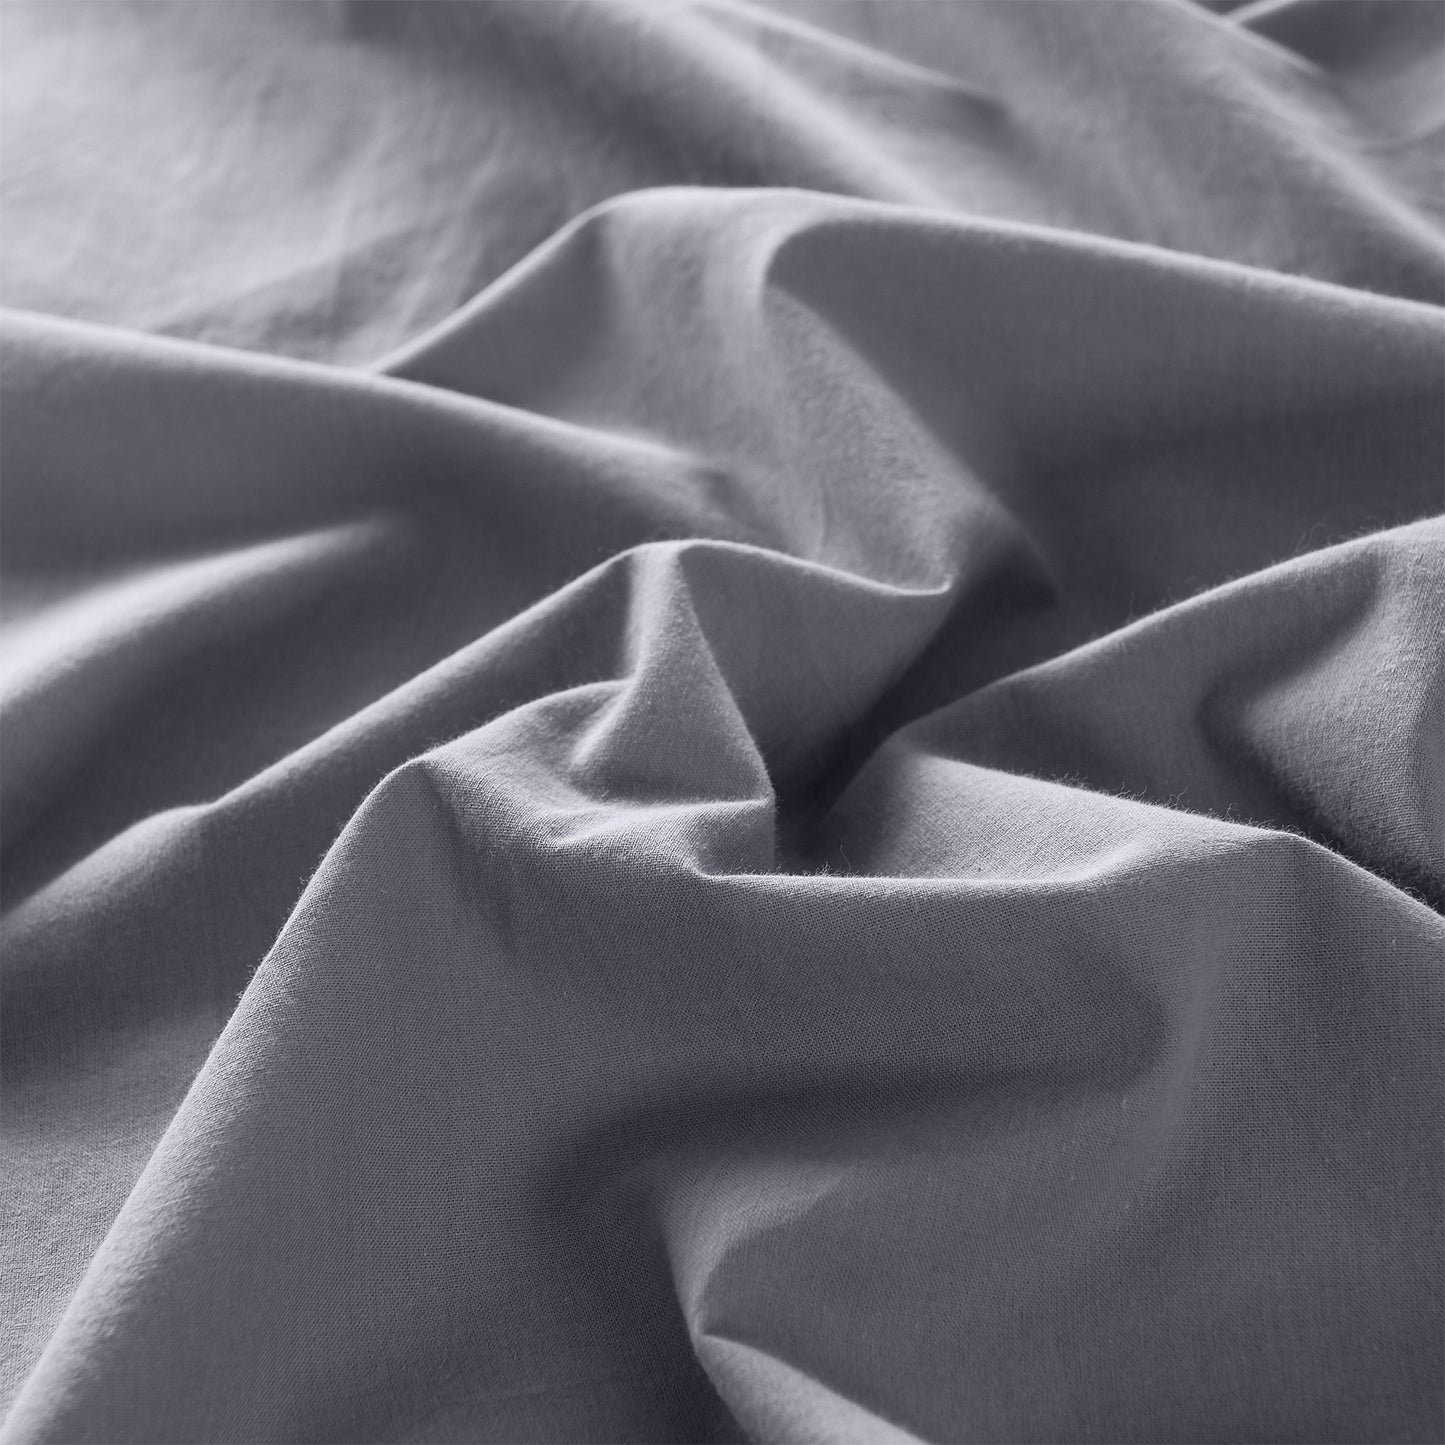 QUEEN Royal Comfort Vintage Washed 100 % Cotton Sheet Set Set - Grey